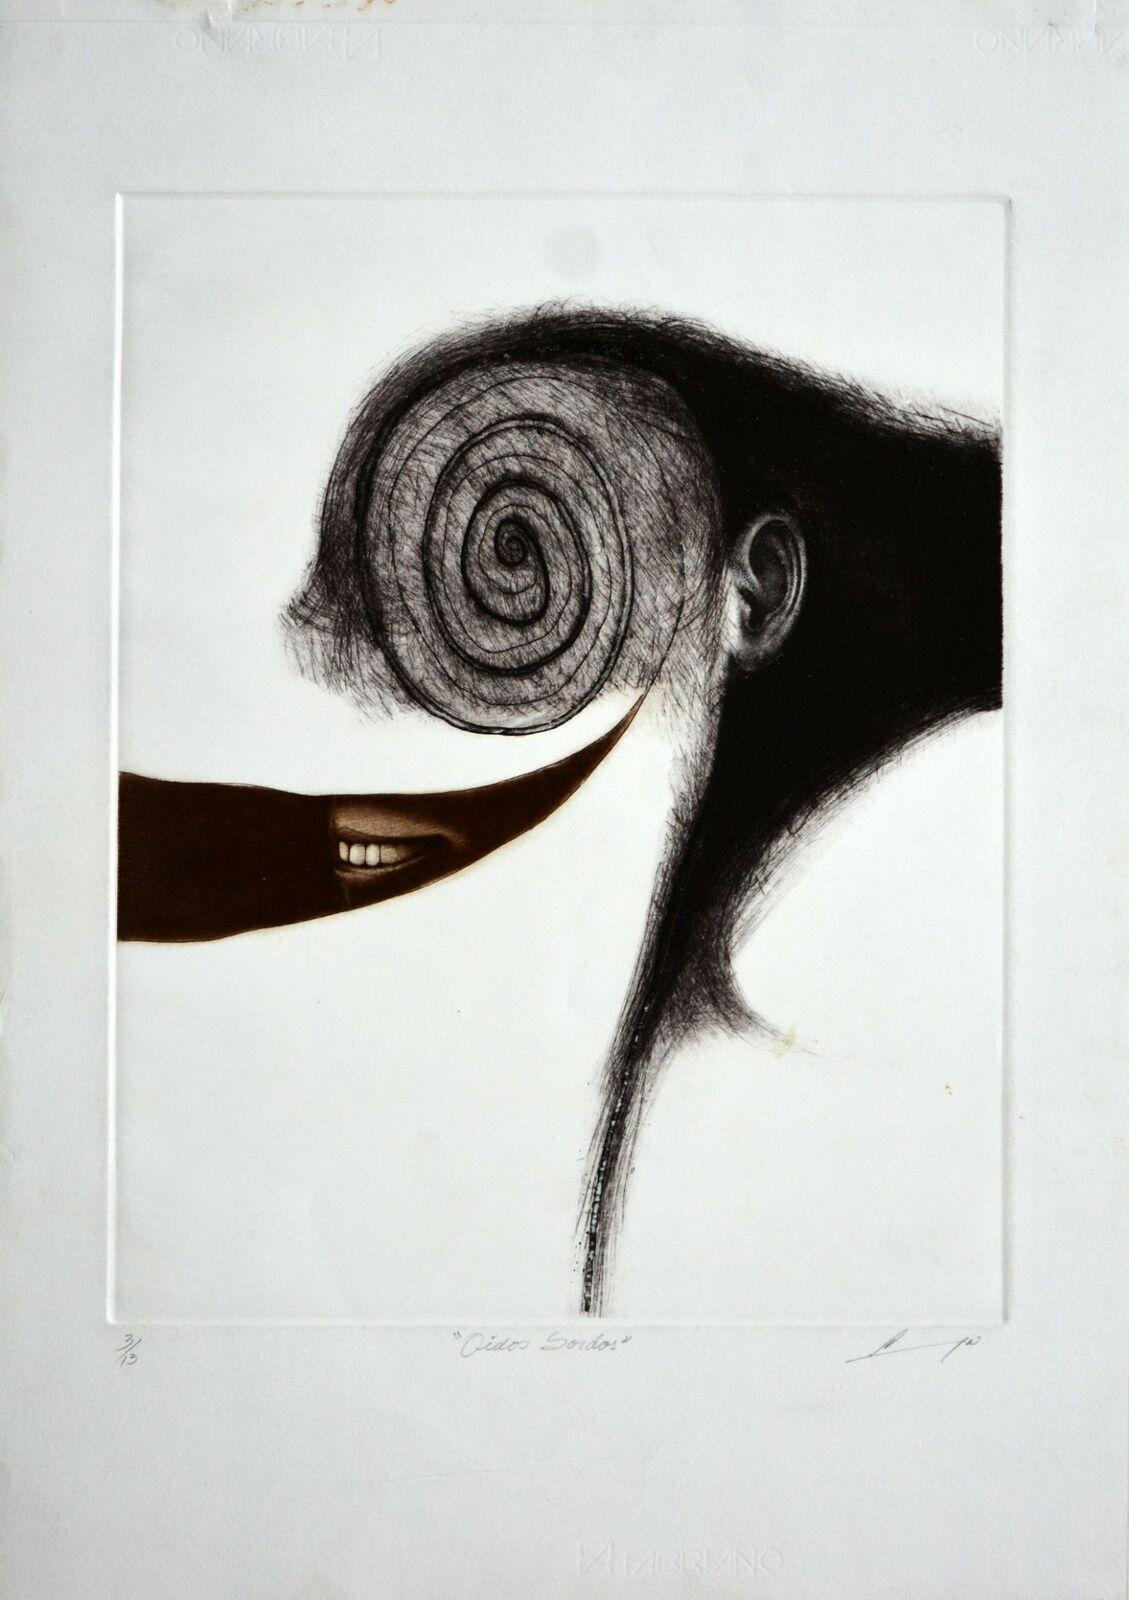 Luis Lara, ¨Oídos sordos¨, 2000, Mezzotint, 27.6x19.7 in